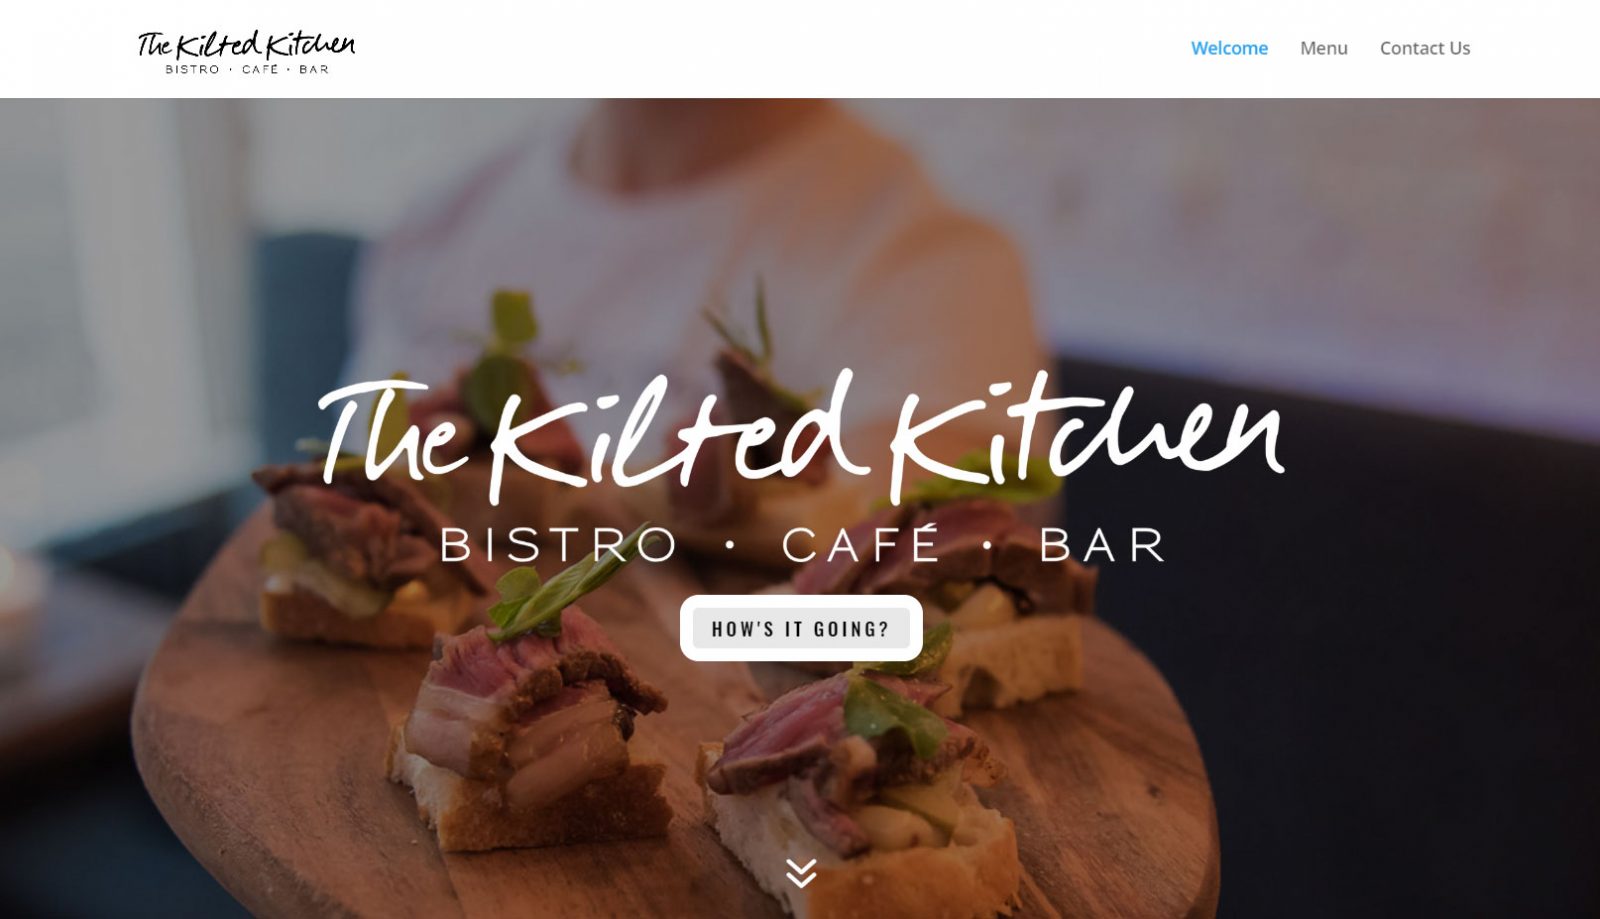 The Kilted Kitchen Edinburgh website